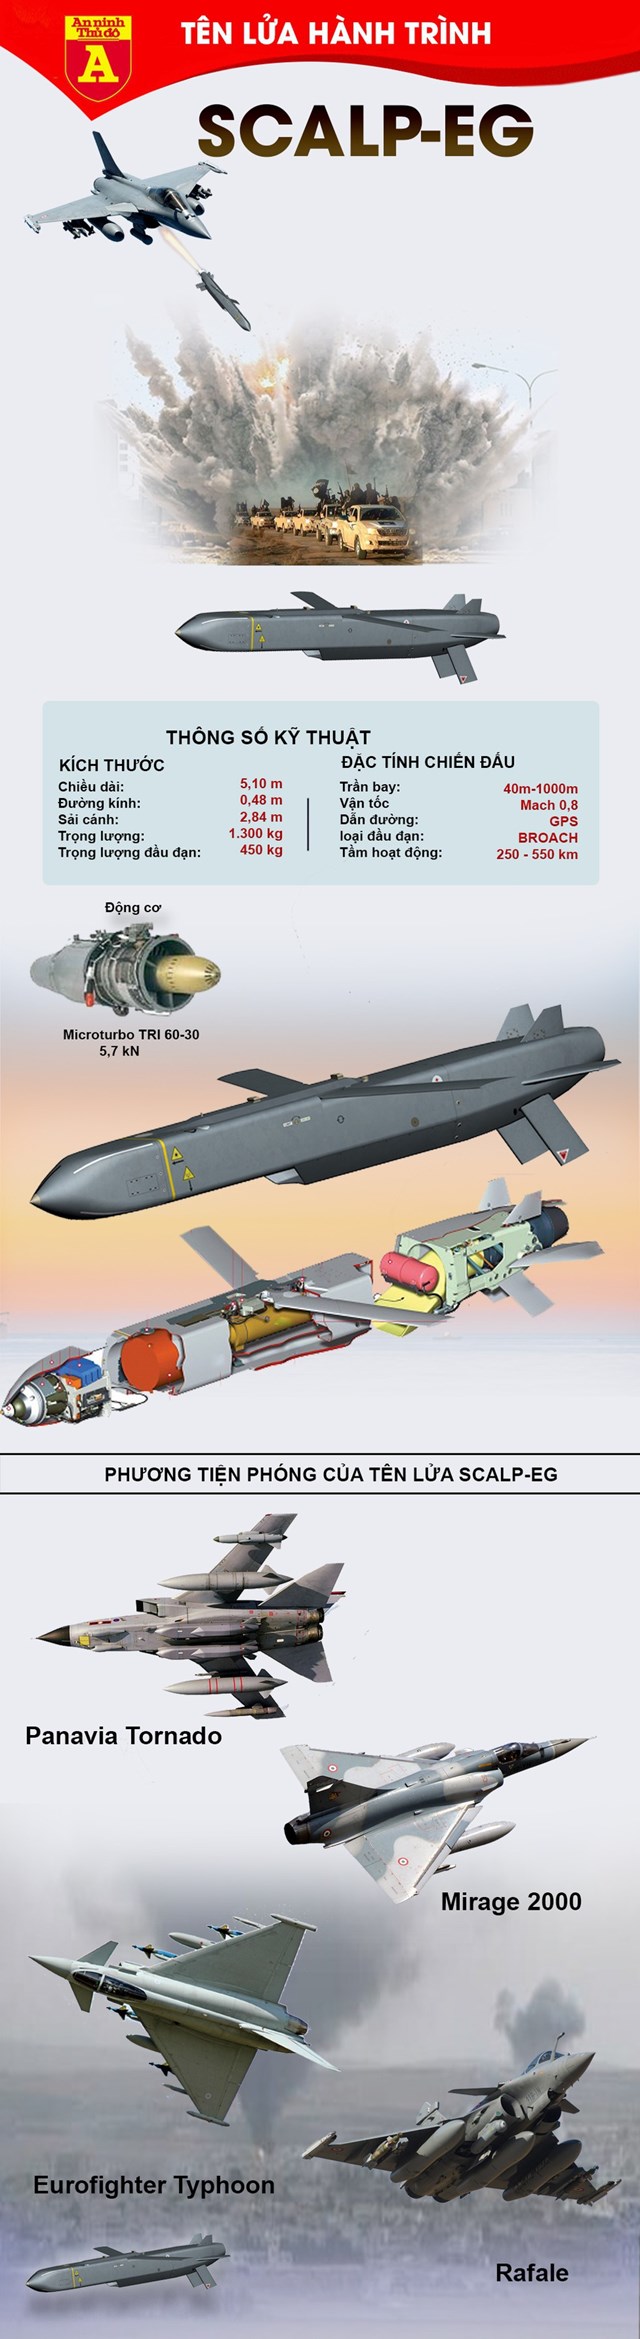 [Infographics] Tên lửa SCALP-EG trang bị trên tiêm kích Rafale Ấn Độ khiến Trung Quốc lo ngại - Ảnh 1